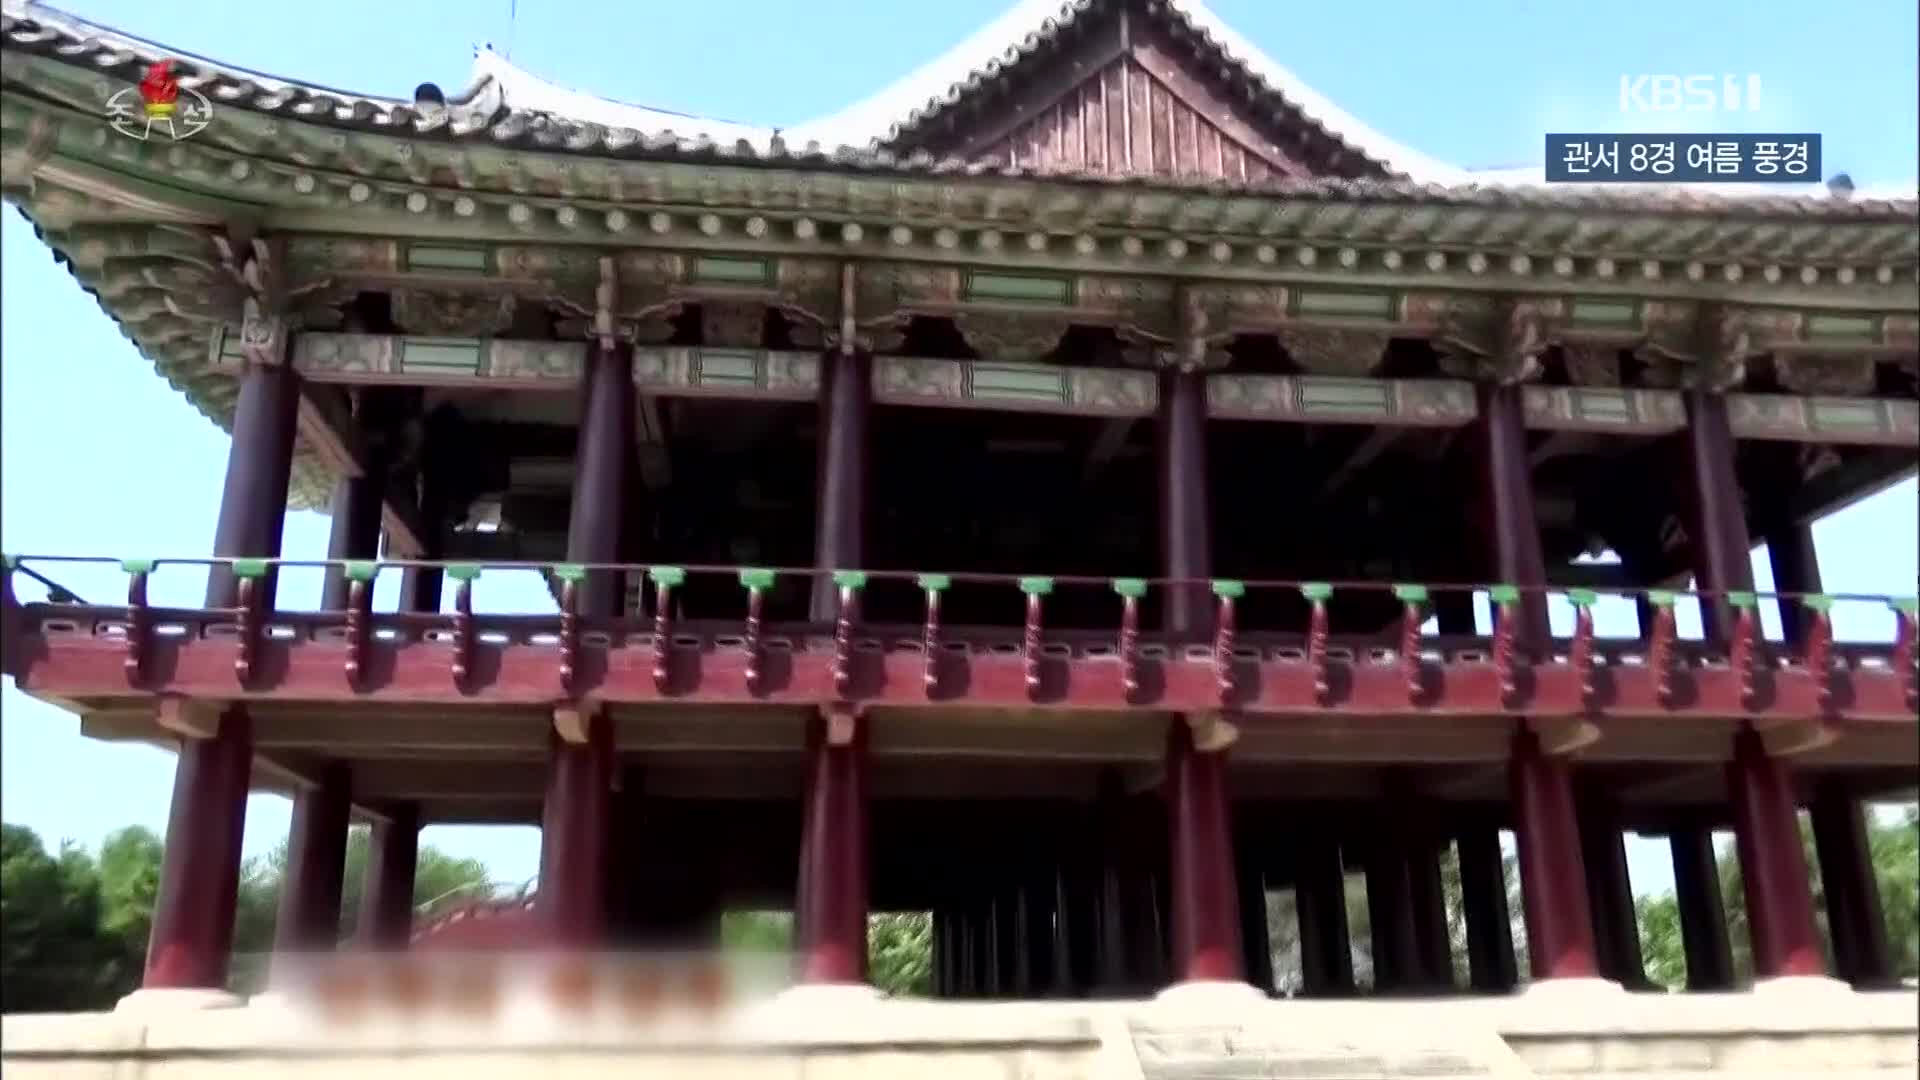 [북한 영상] 관서 8경 여름 풍경